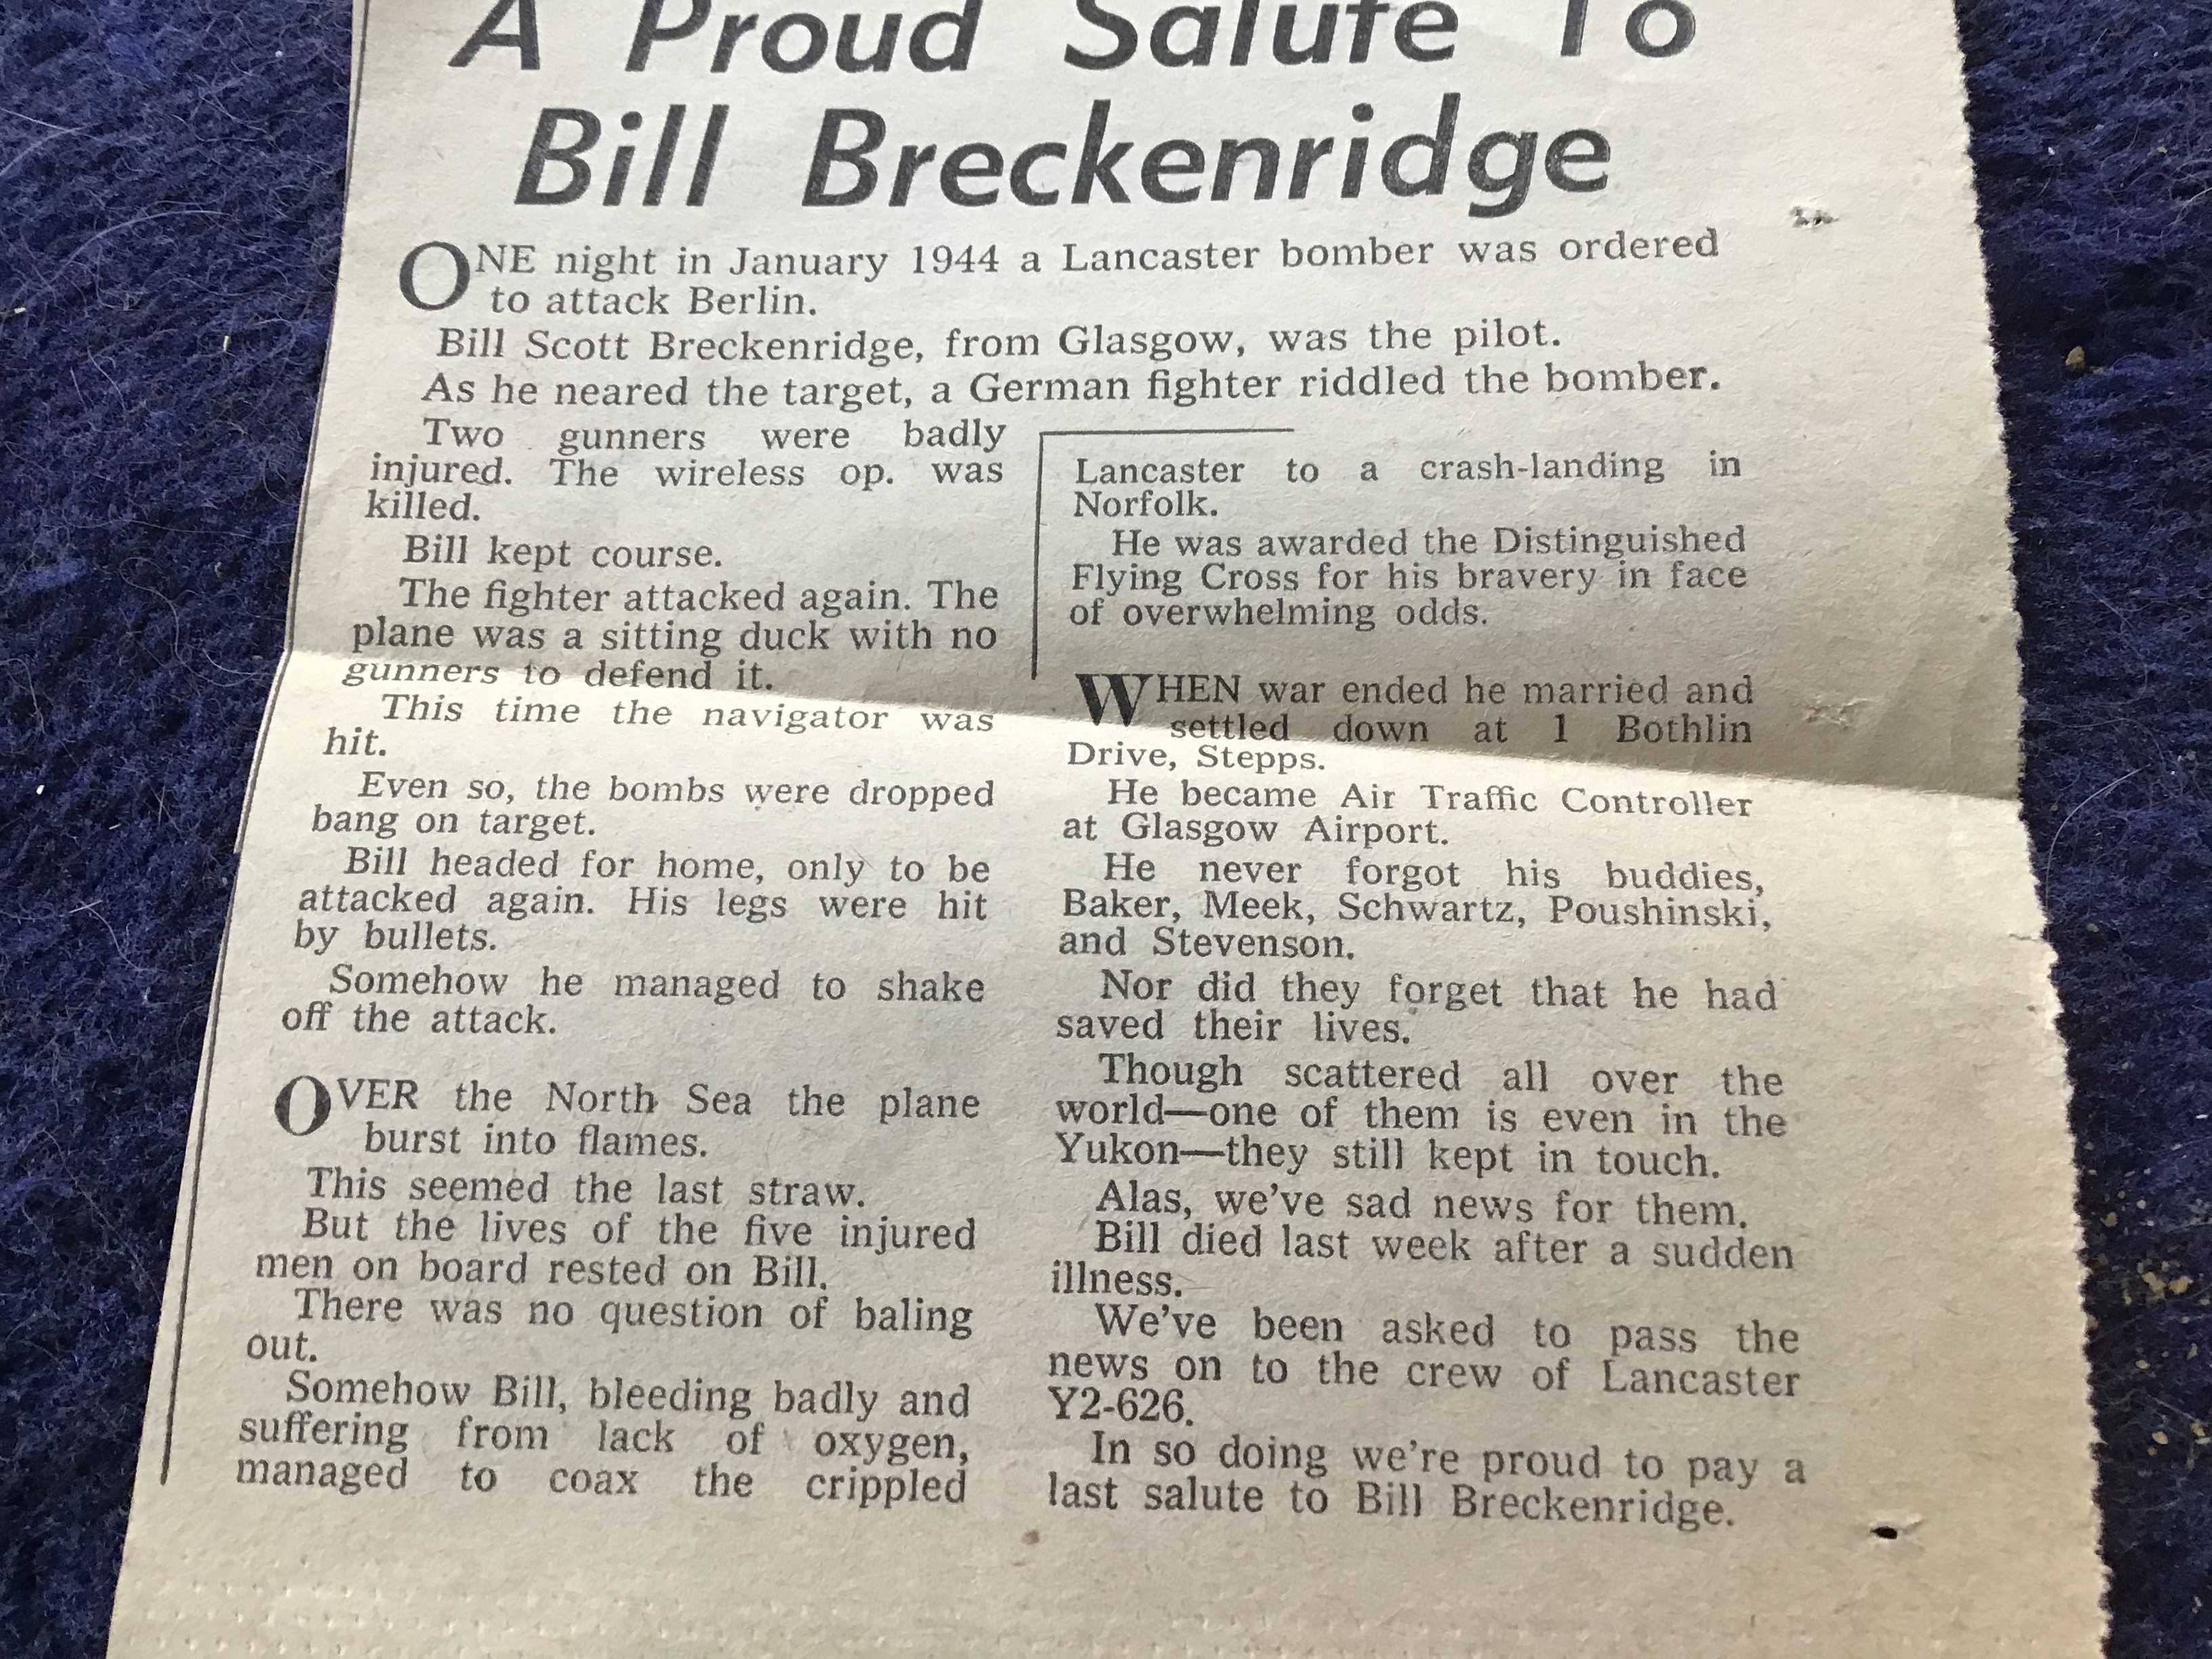 BILL BRECKENRIDGE